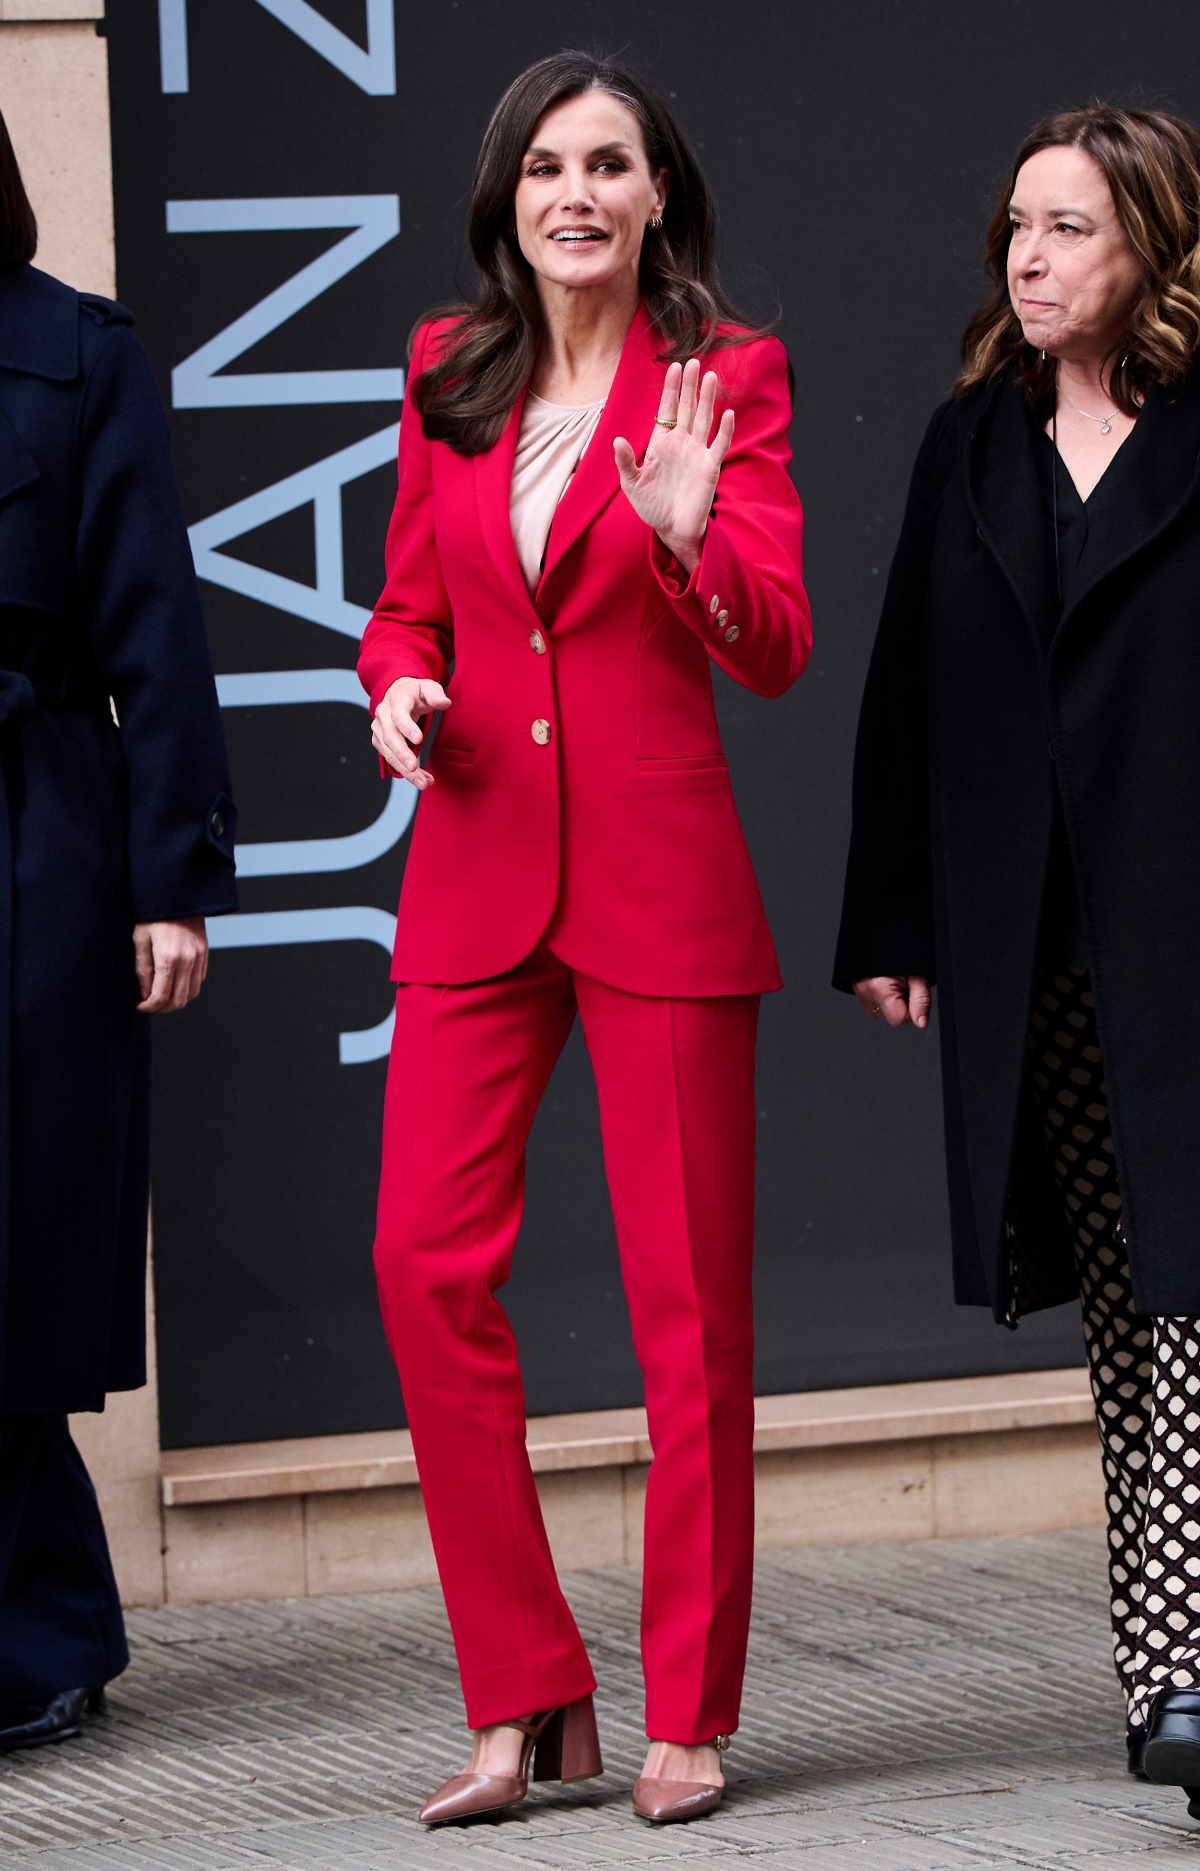 Królowa Letycja do dopasowanego modelu garnituru w czerwonym kolorze wybiera buty w nieoczywistym odcieniu nude.